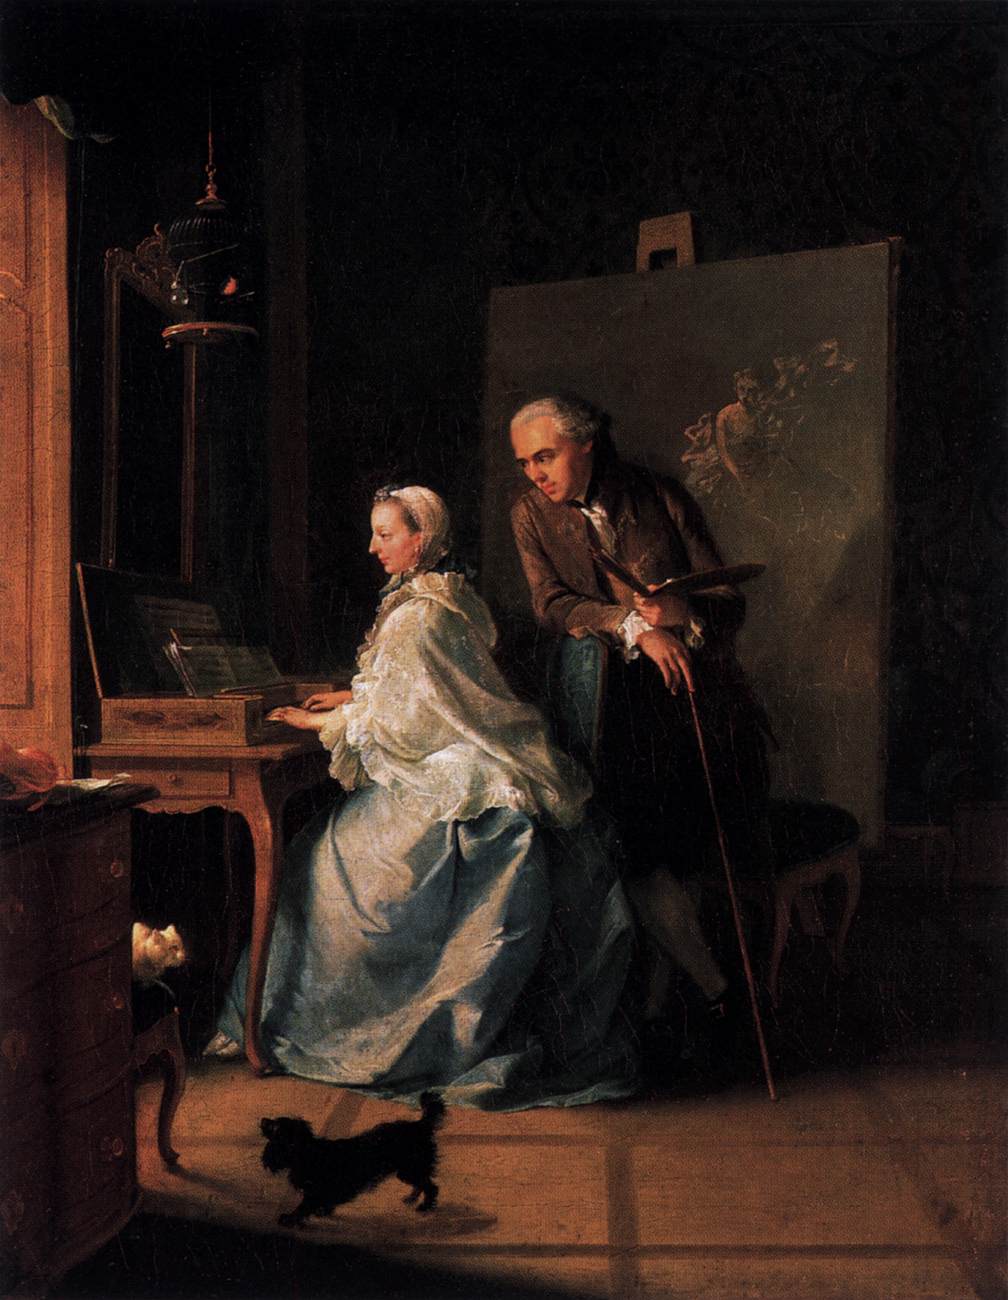 Portrait de l'artiste et de sa femme dans la spineta